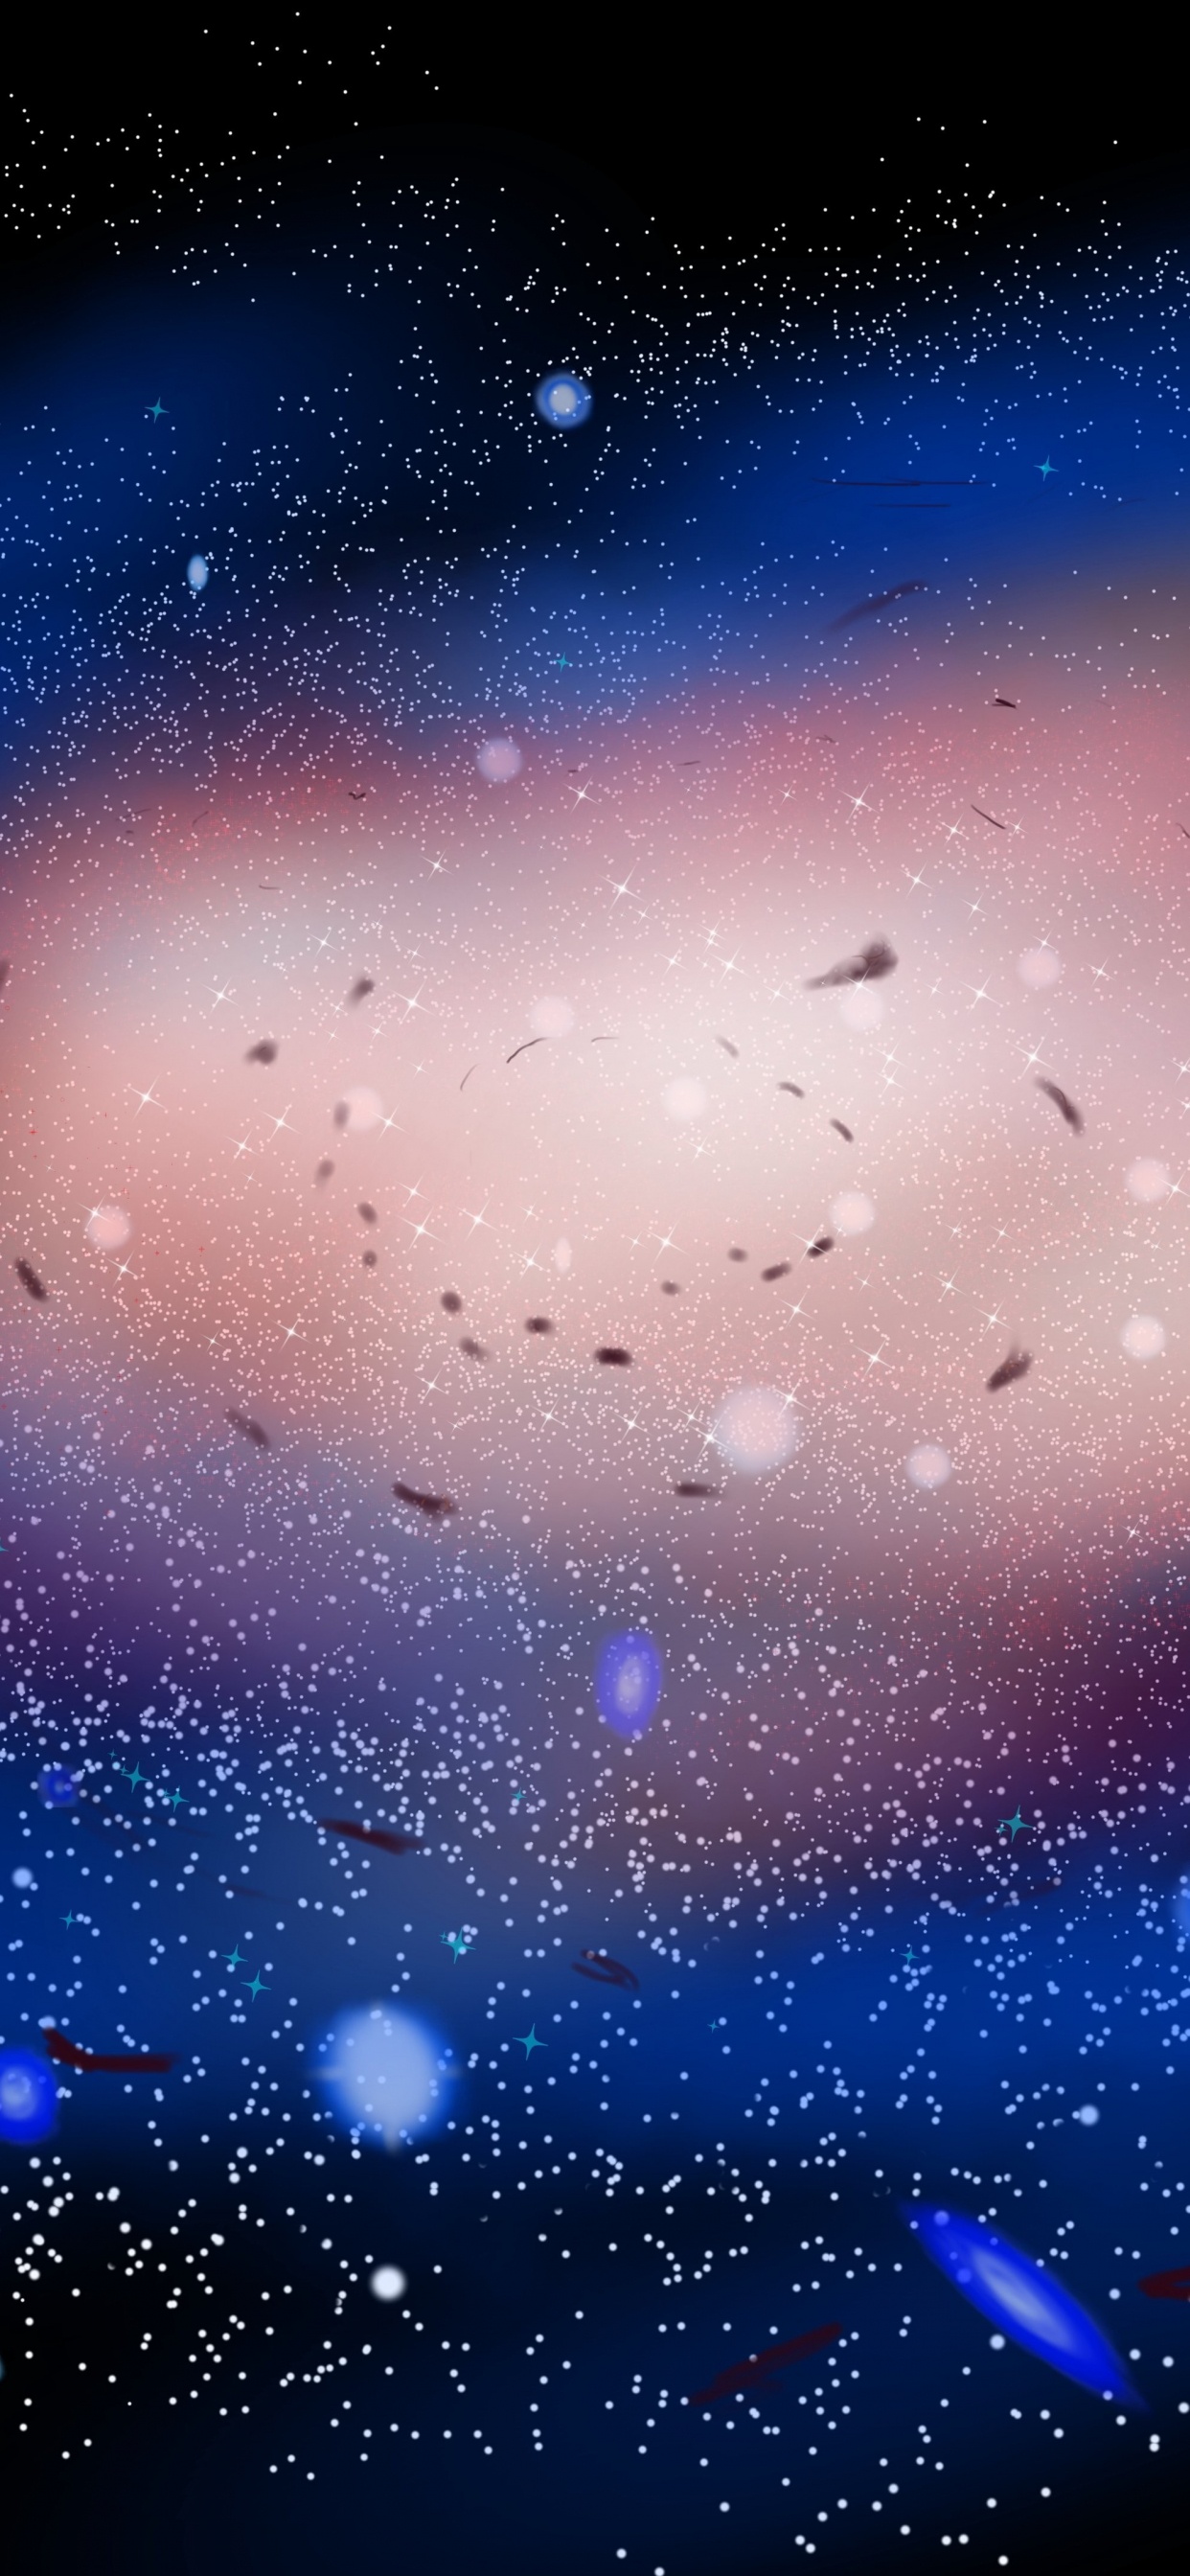 Blaue Und Weiße Sterne am Himmel. Wallpaper in 1242x2688 Resolution